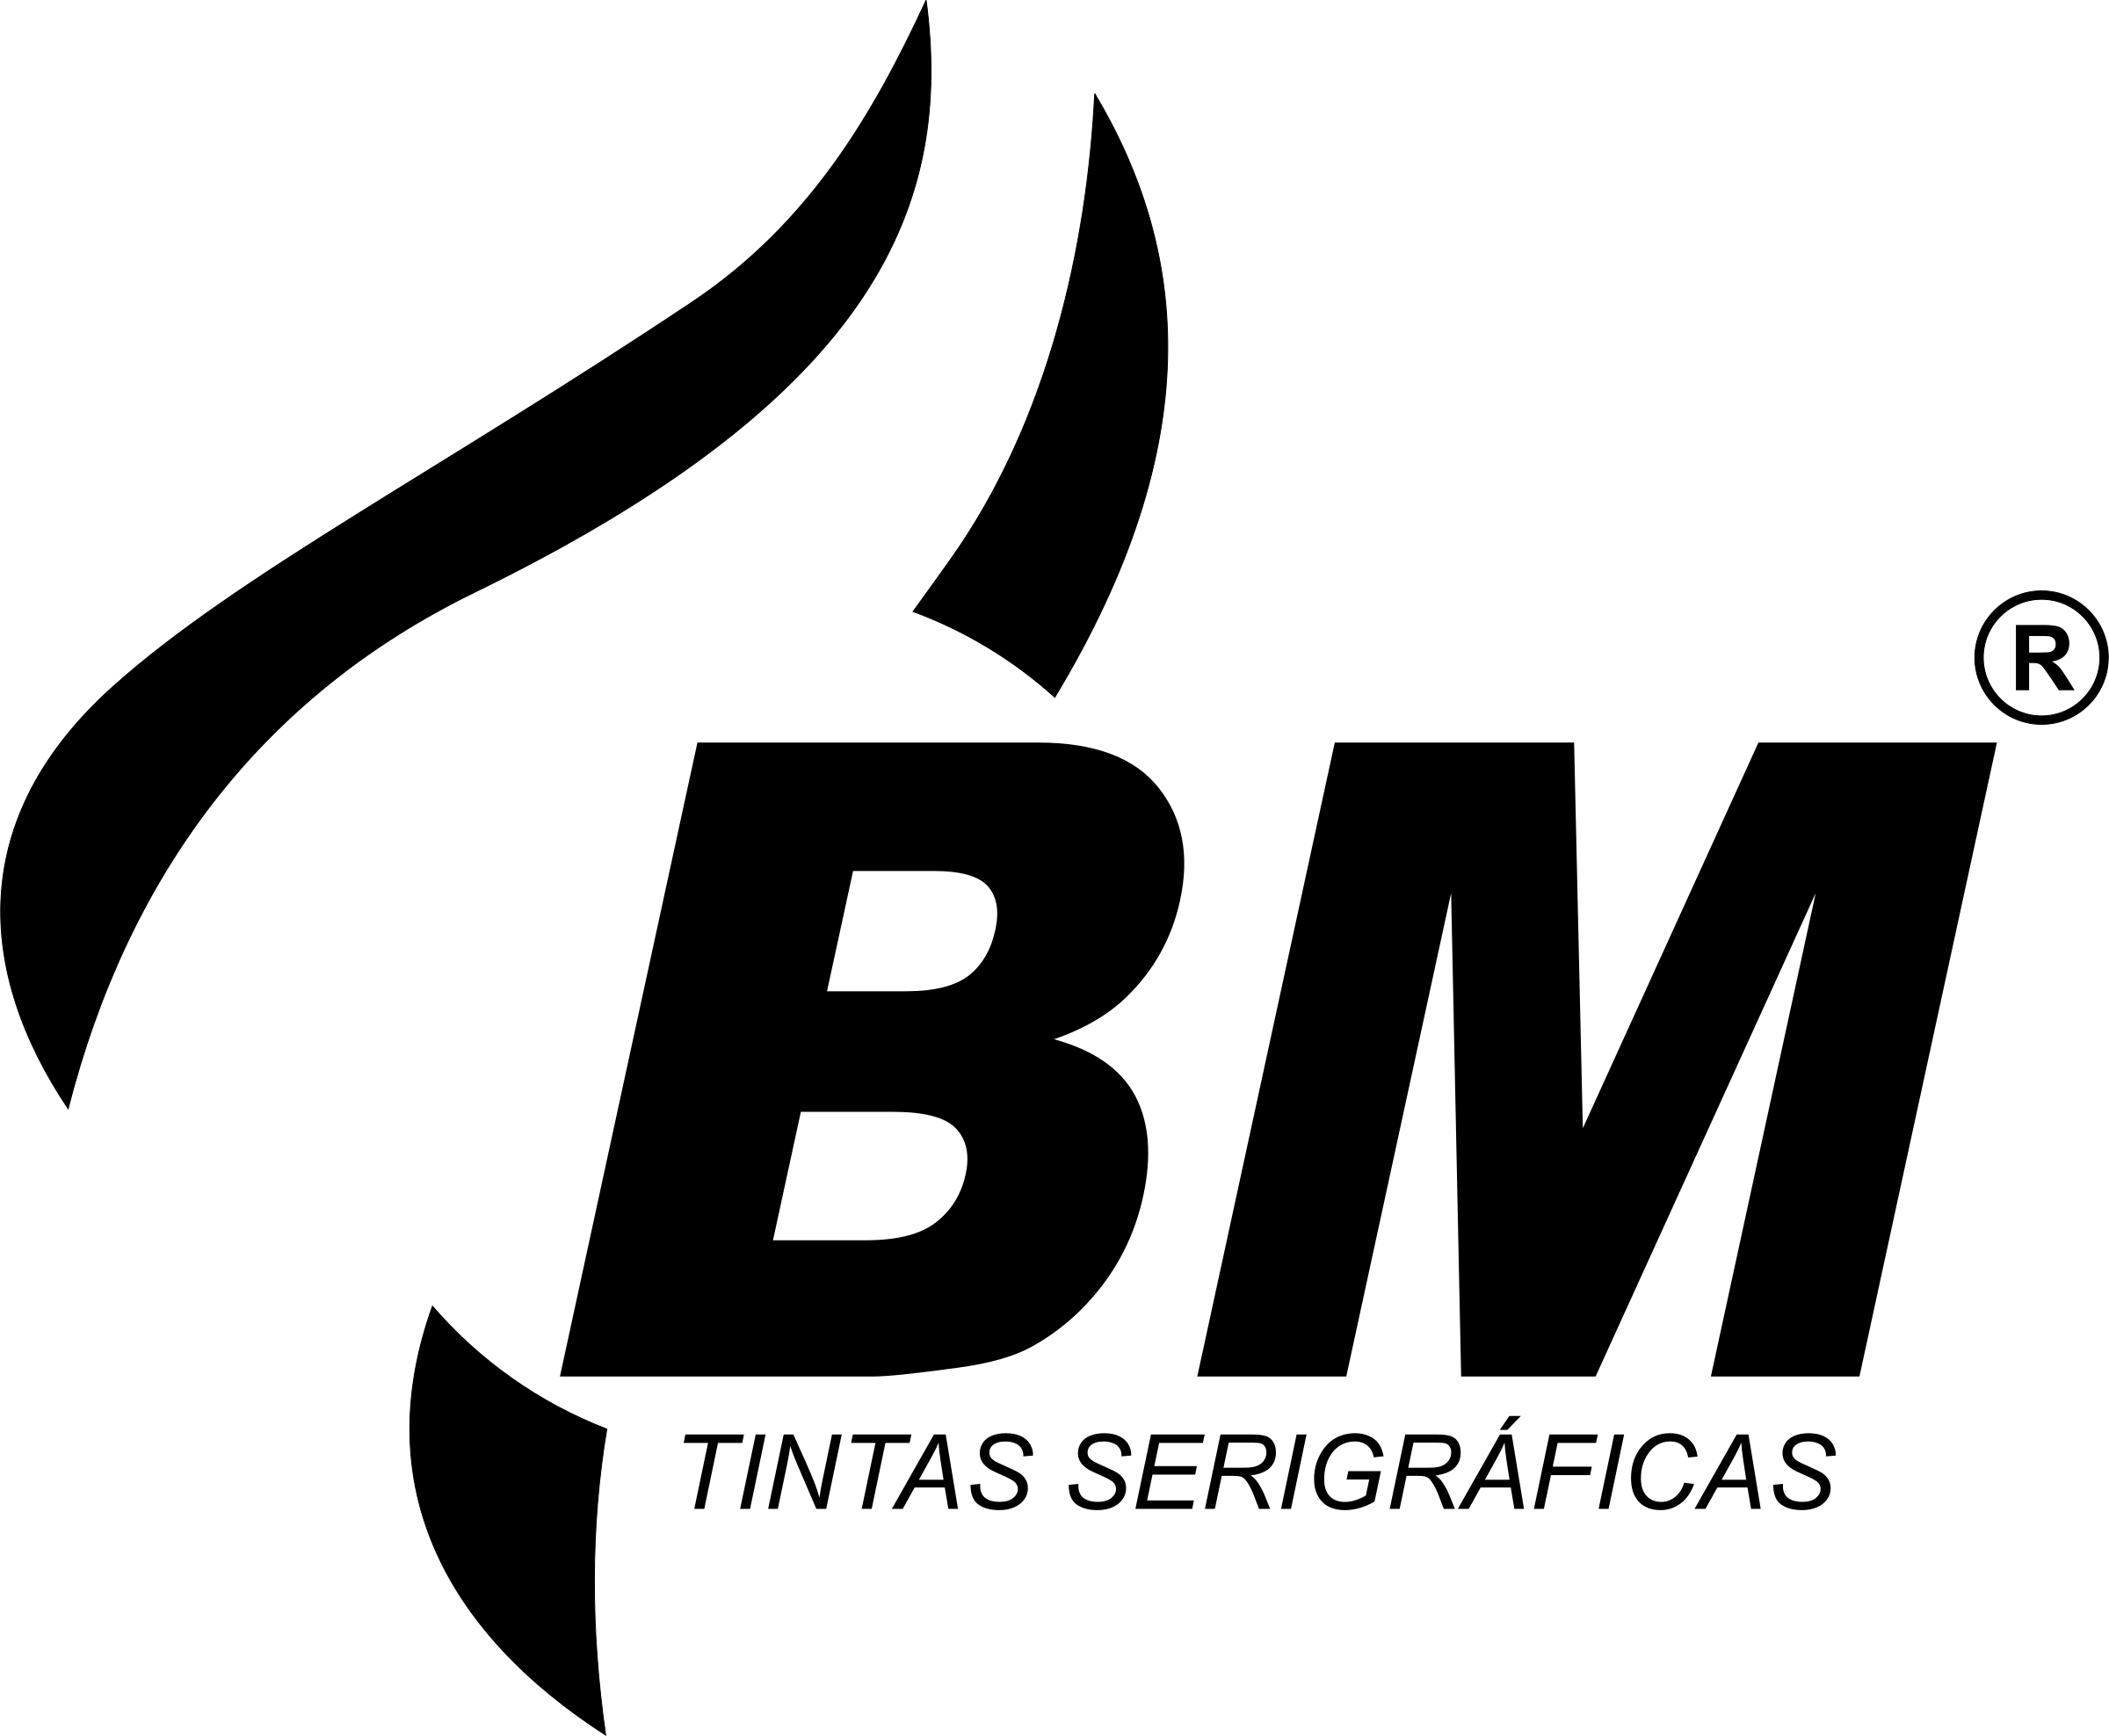 BM Logo - BM Logo PNG Transparent & SVG Vector - Freebie Supply